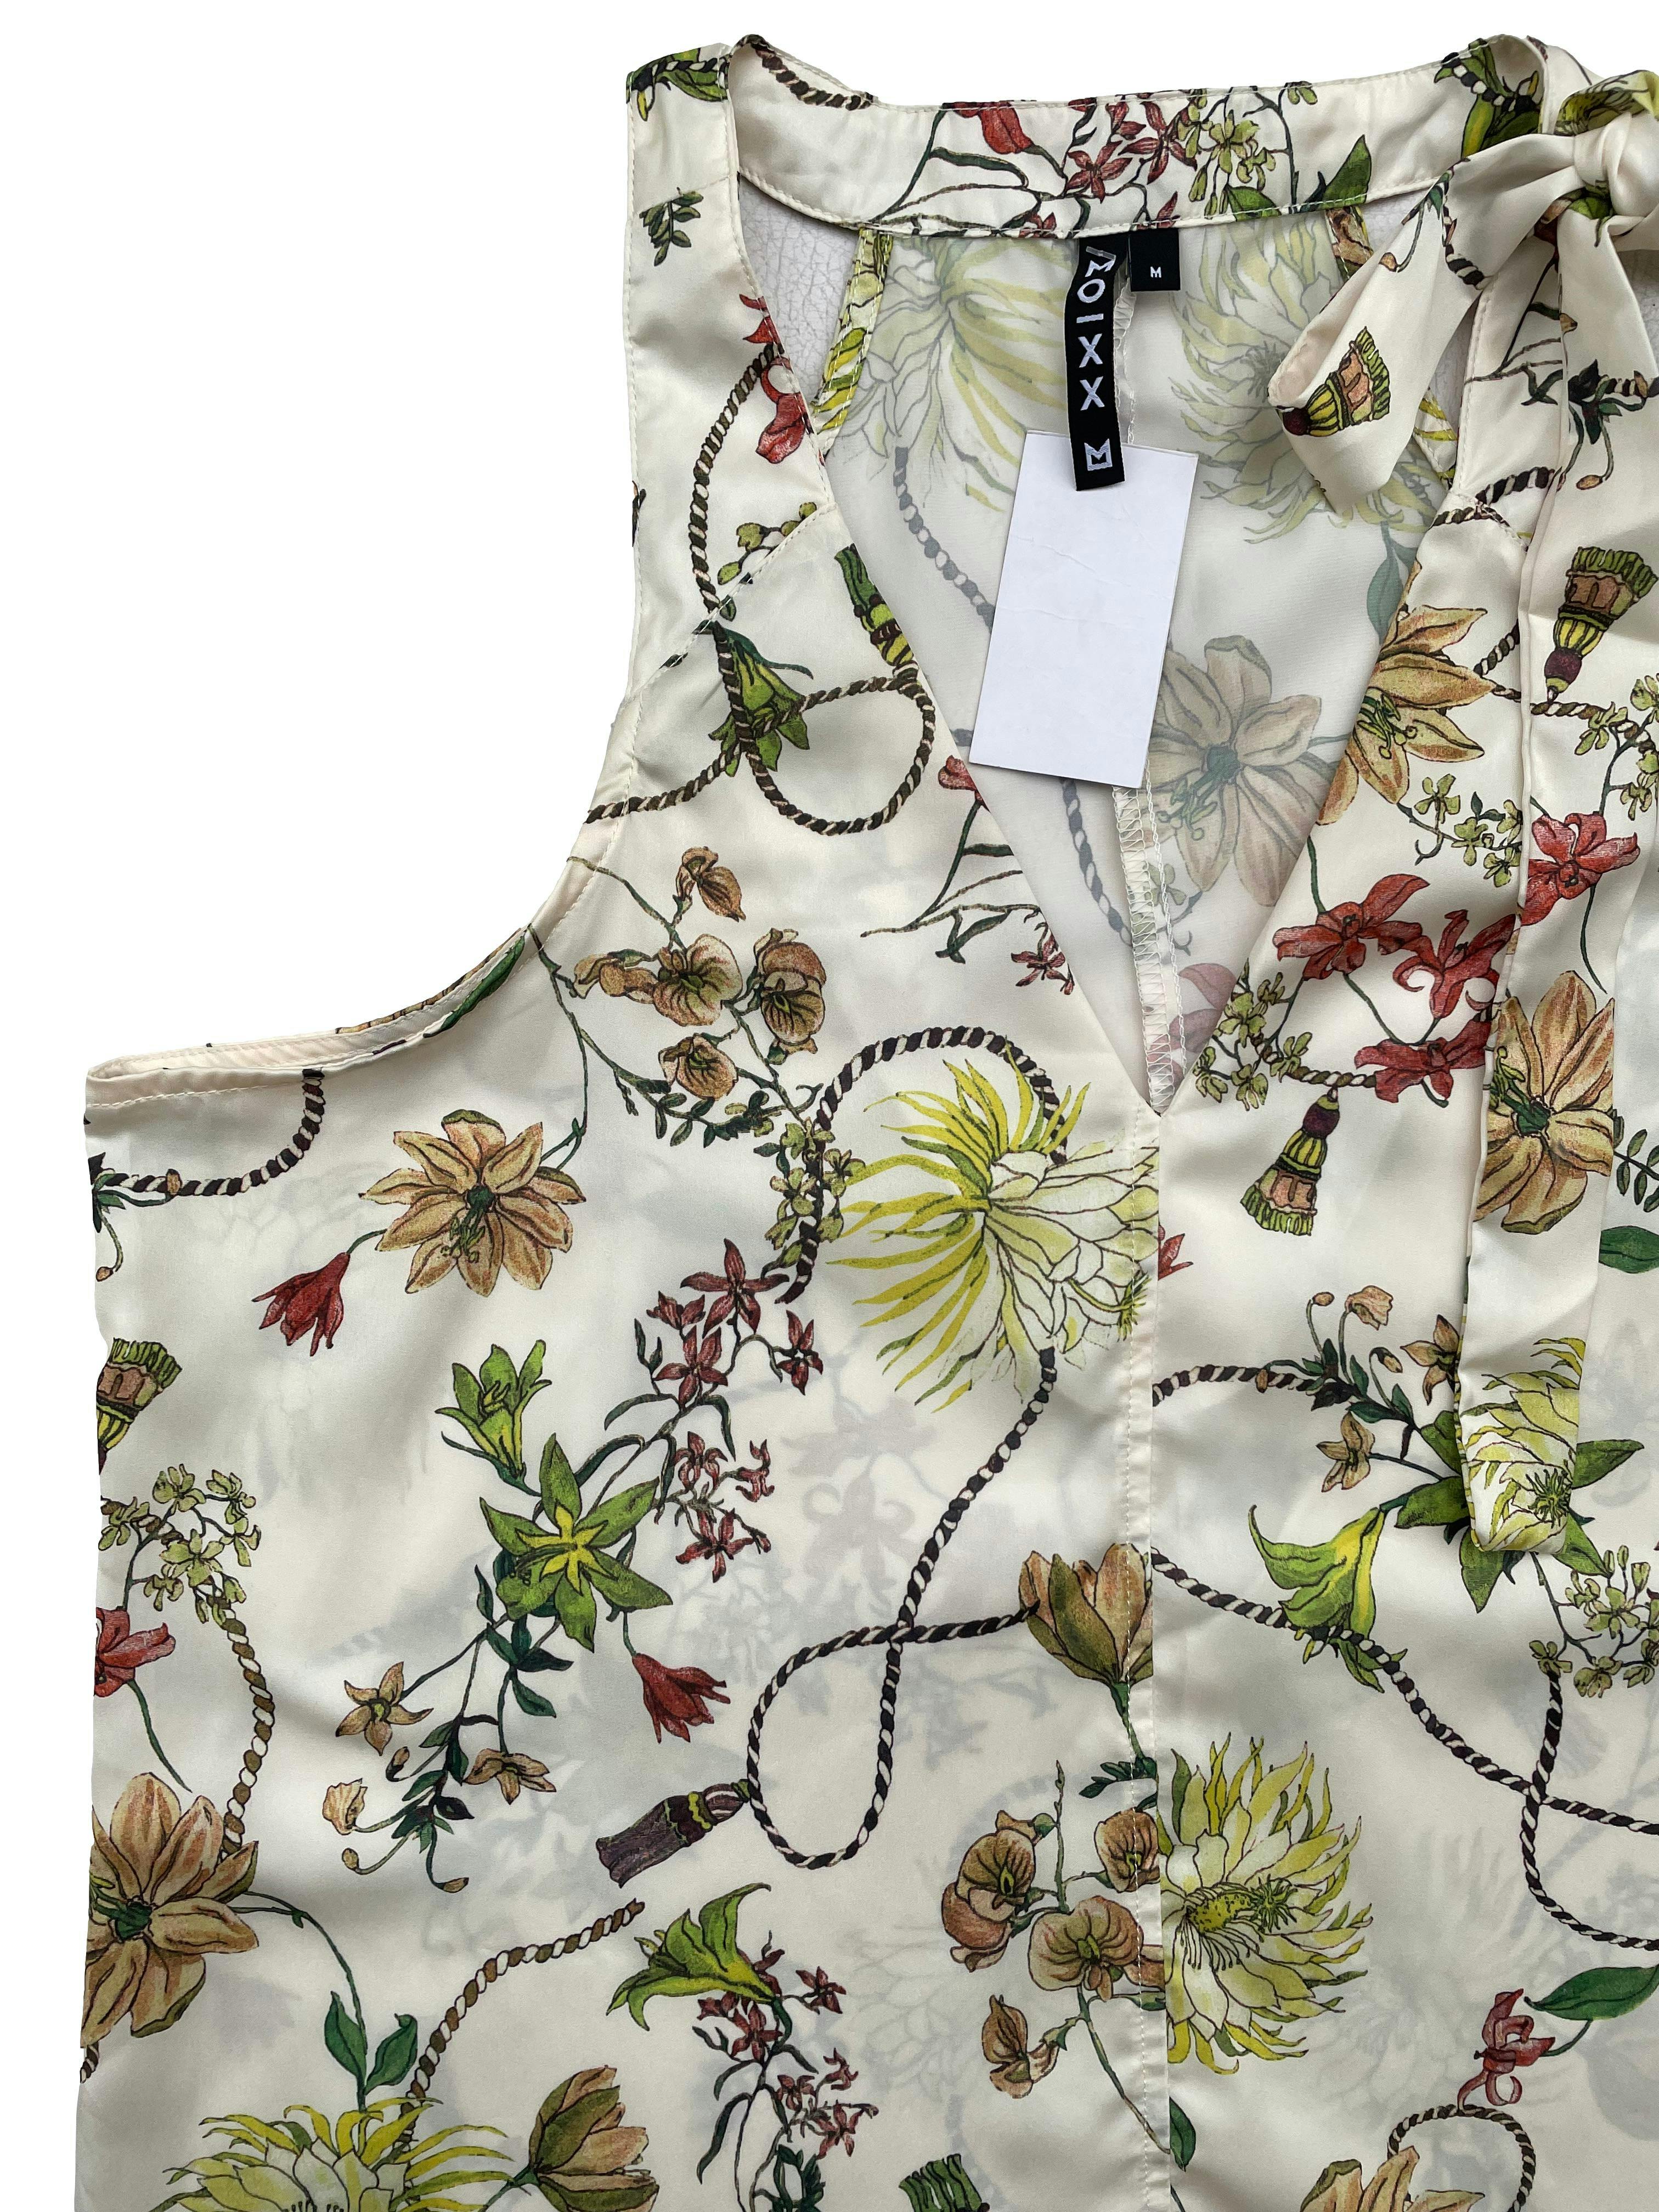 Blusa Moixx de tela sedosa crema con estampado de hojas, lazo en cuello. Busto 100cm Largo 65cm